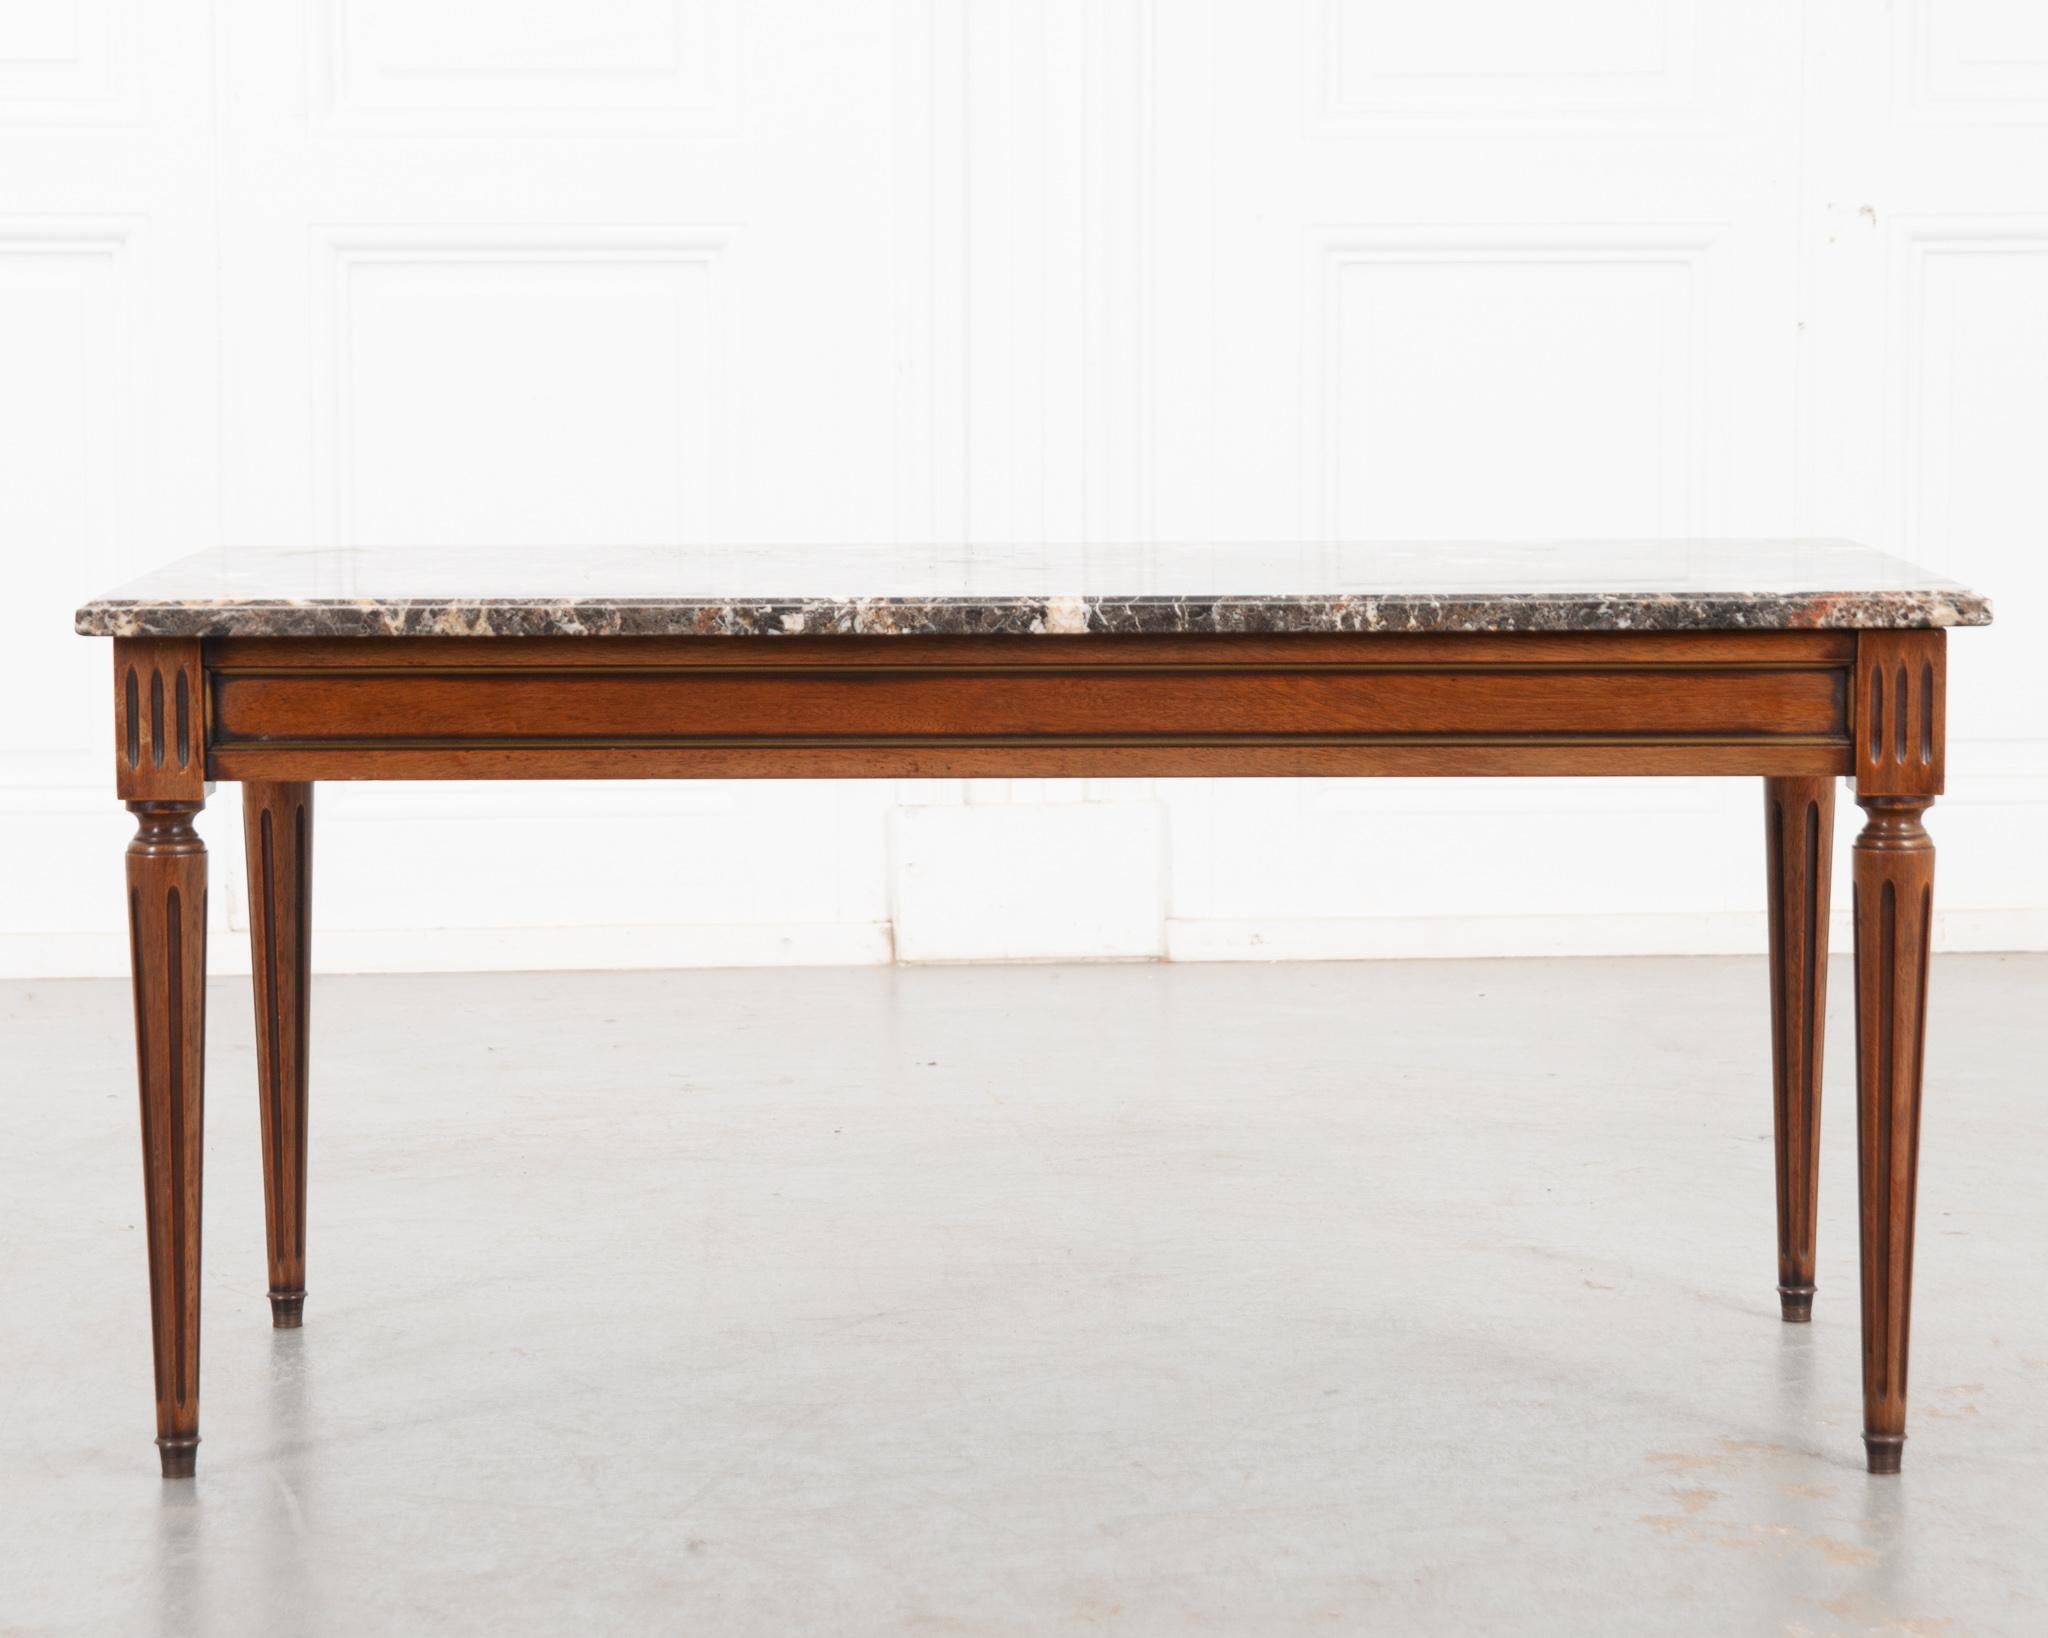 Cette base de table basse vintage en acajou est de style Louis XVI et est surmontée d'une pièce exceptionnelle de marbre coloré. Il présente un tablier à panneaux garnis de laiton et des pieds cannelés et tournés qui se terminent par des pieds